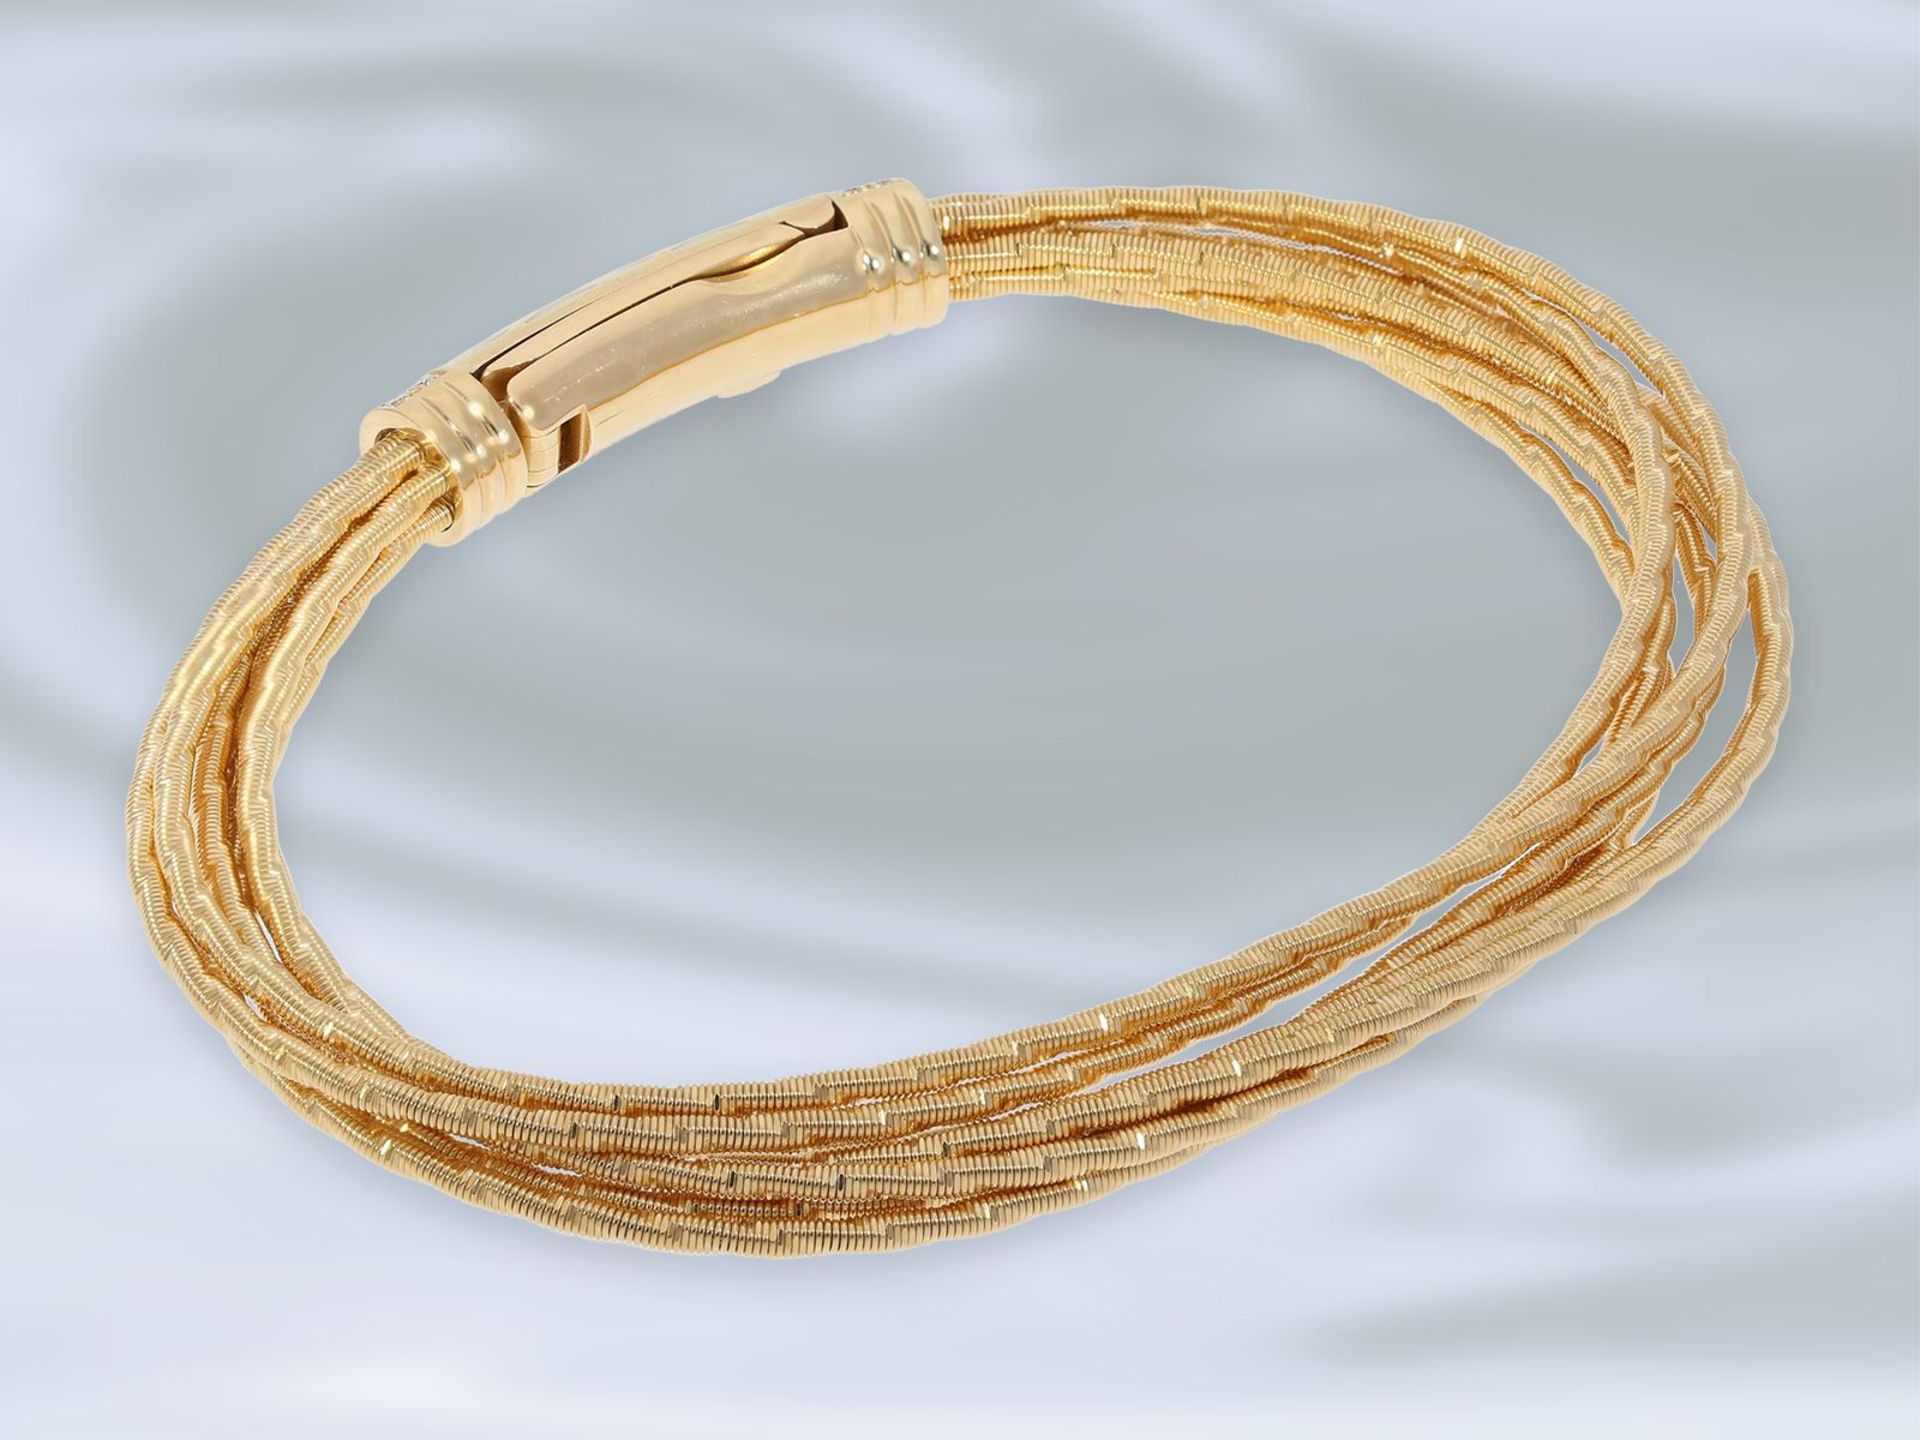 Armband: exquisites, neuwertiges Gold/Emaille-Armband von Wellendorff "Flügel der Nacht", - Bild 2 aus 4